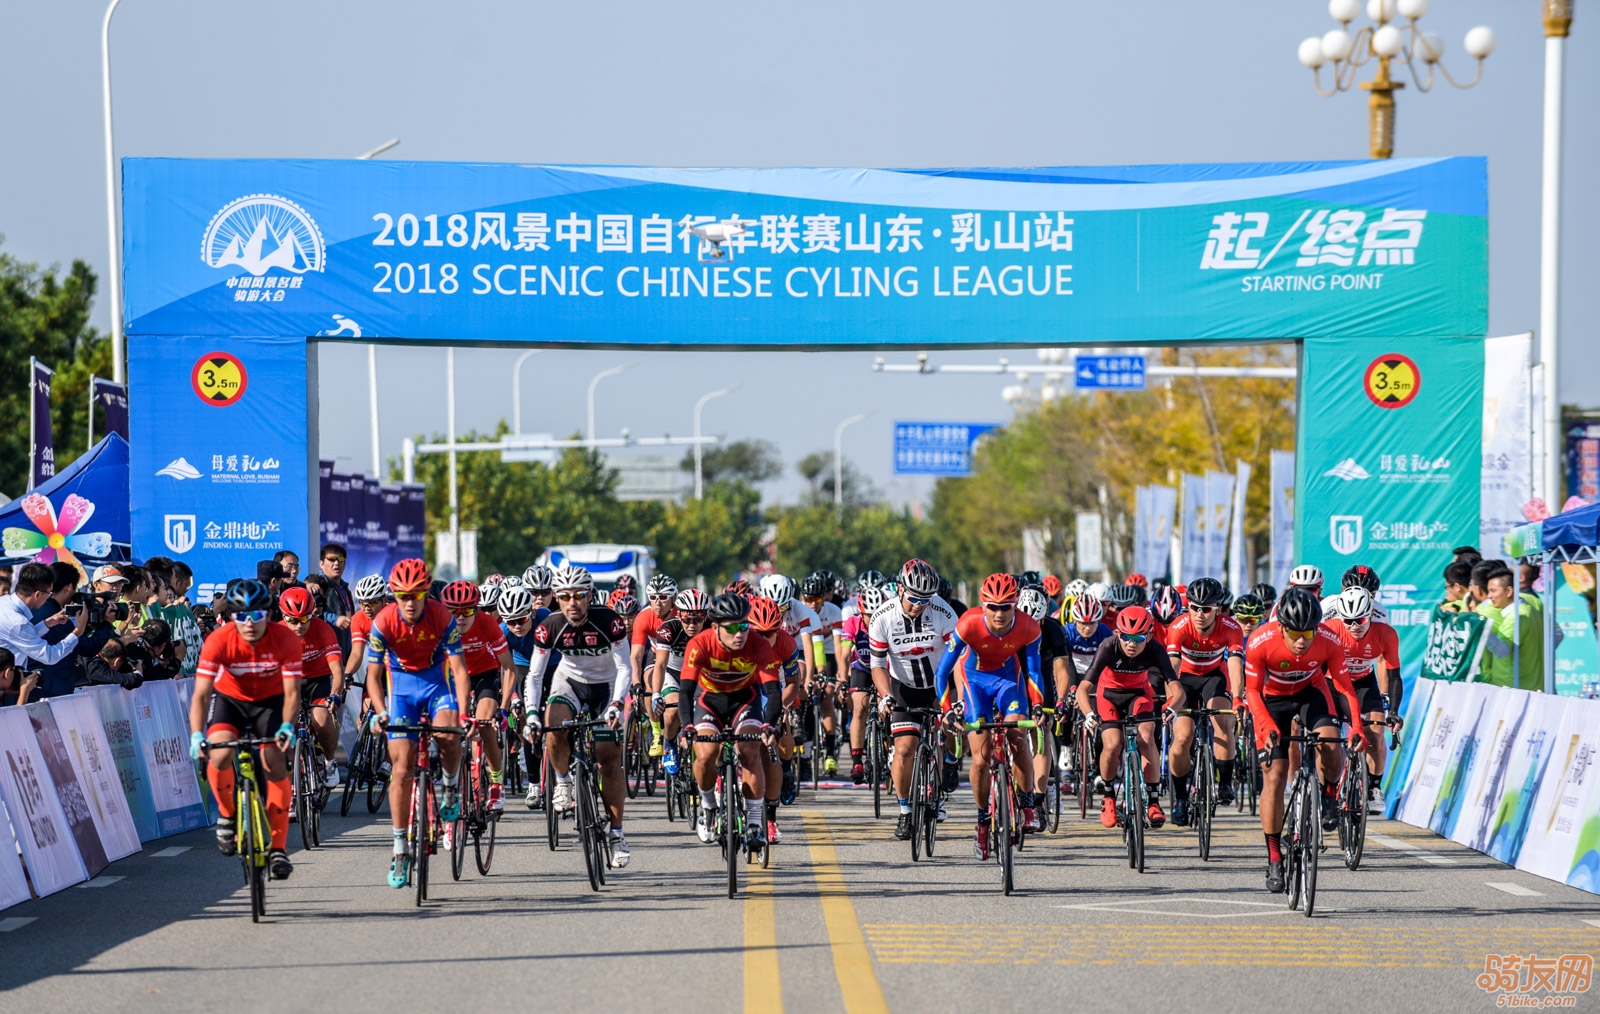 2018风景中国自行车联赛山东•乳山站震撼开赛